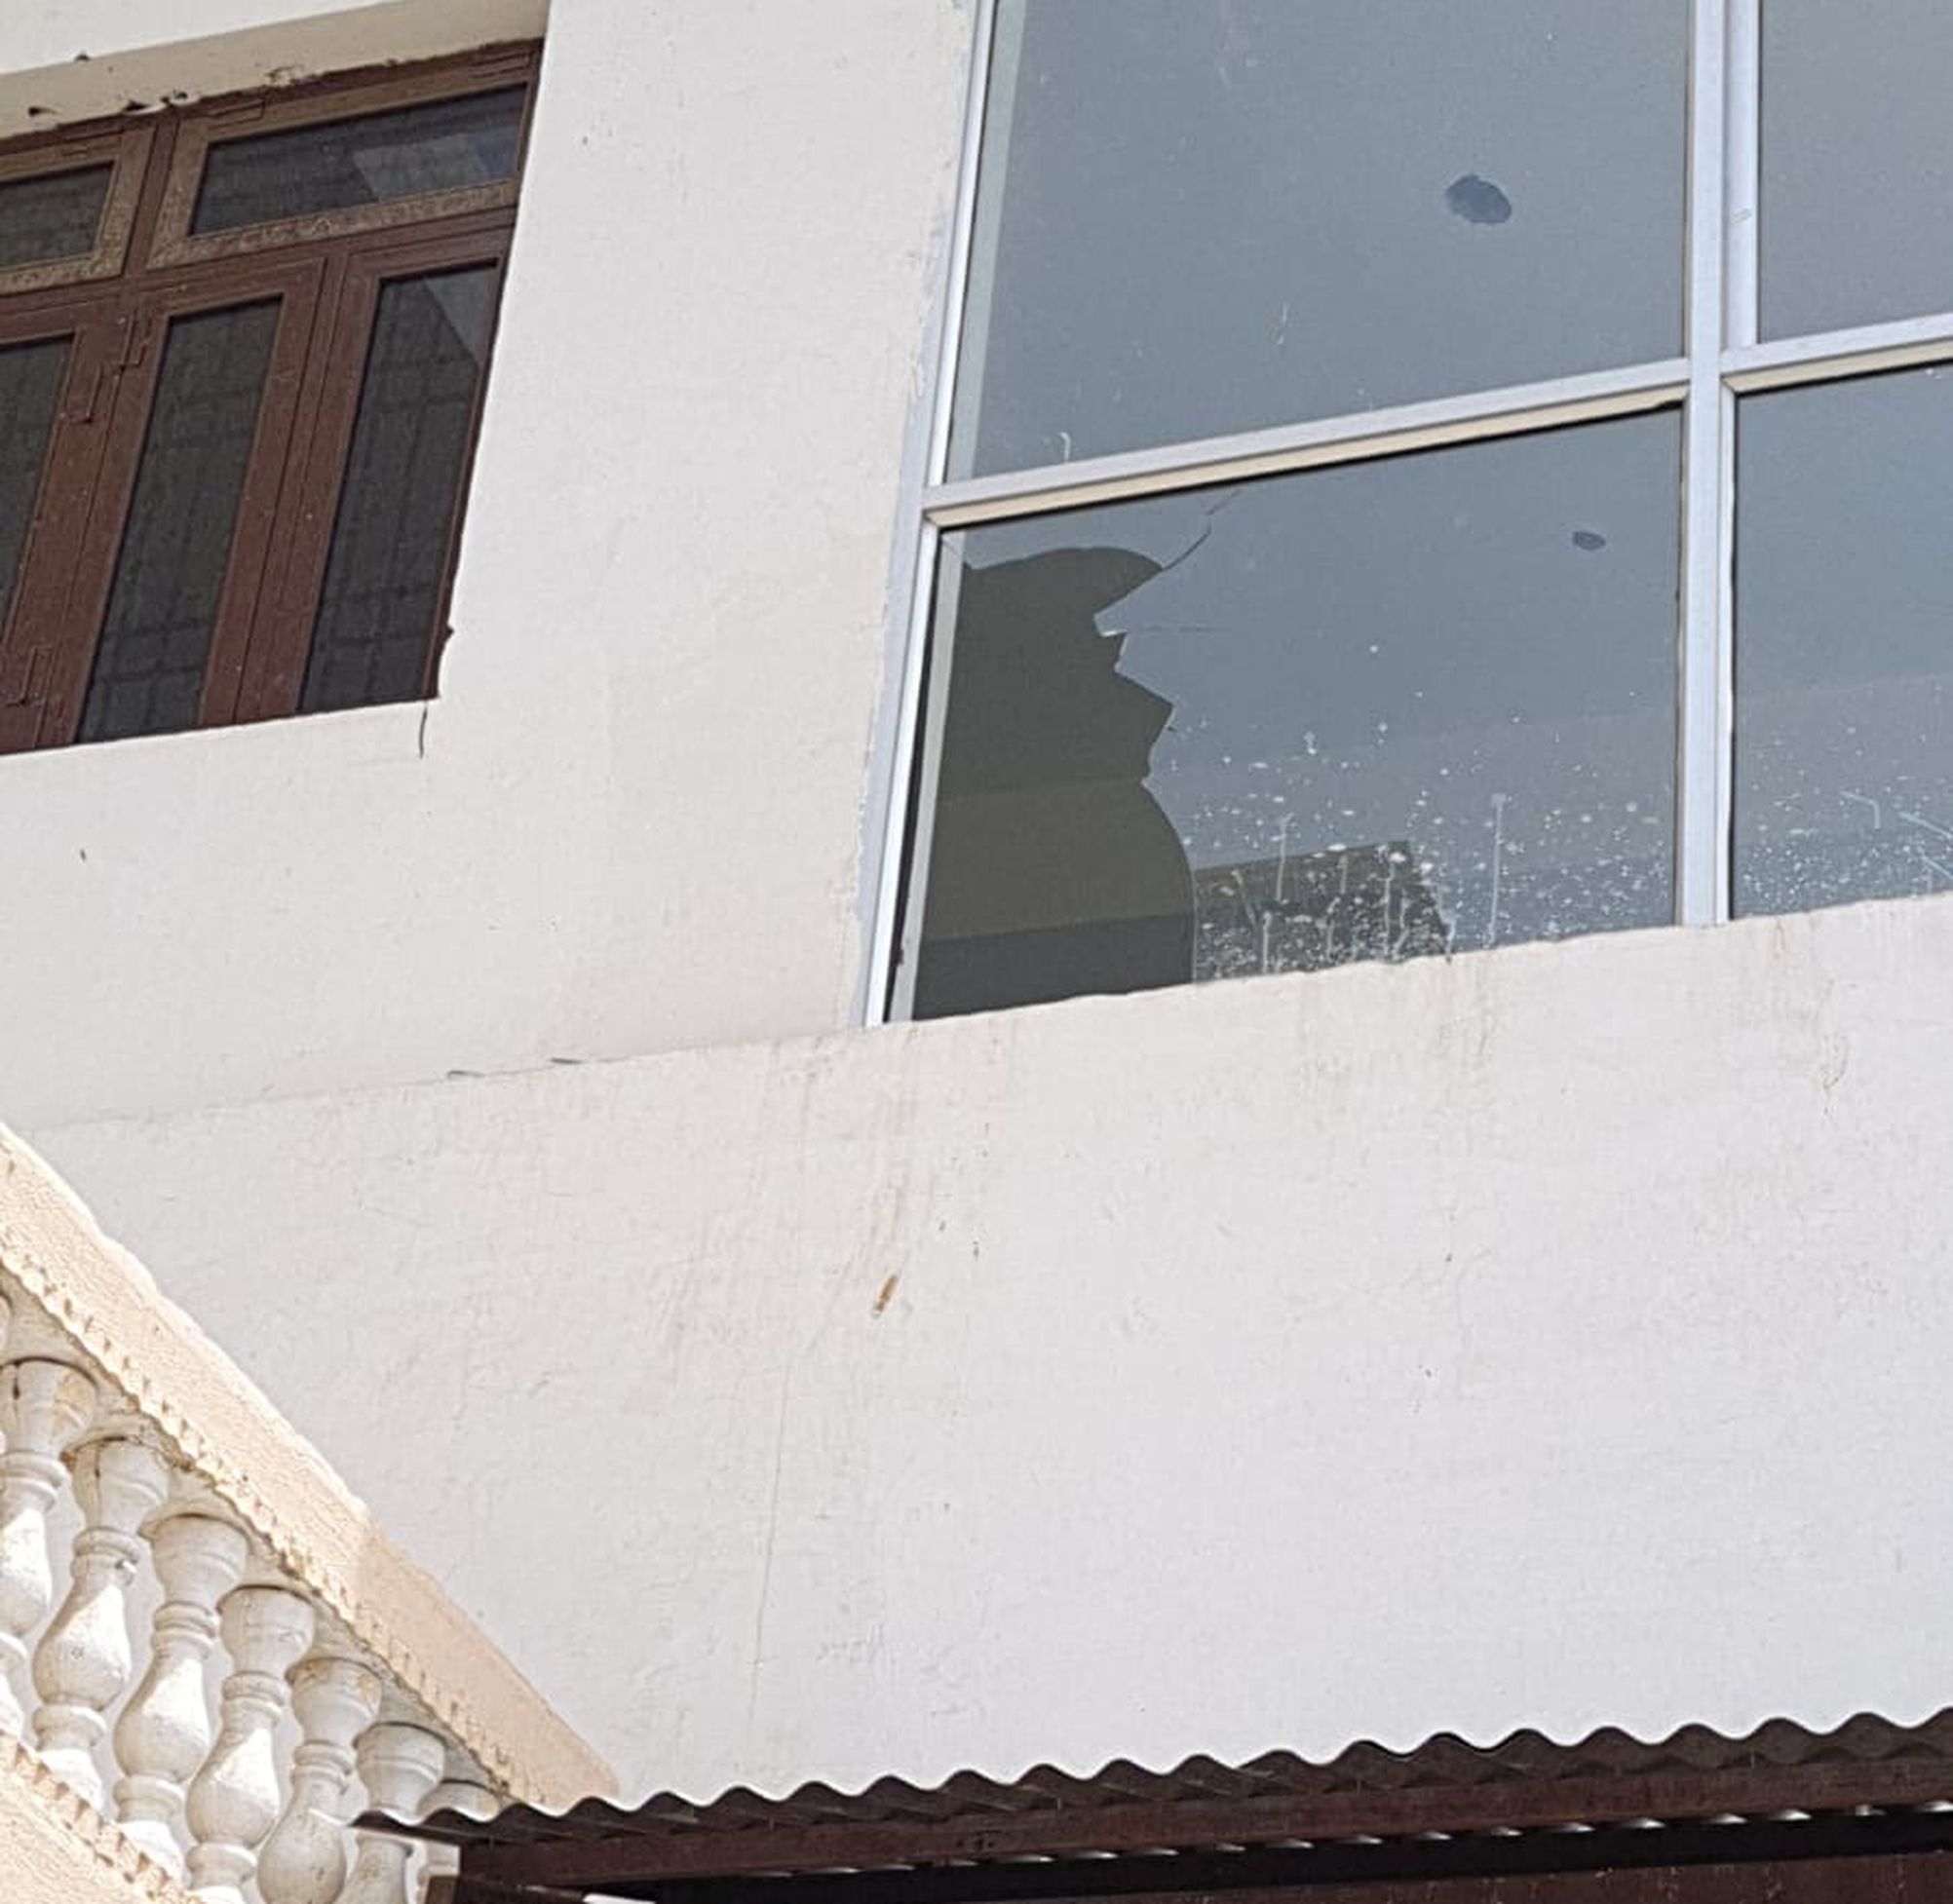 लाठी के सहारे छत पर चढ़ा और शीशा तोड़ दुकान में घुसा चोर, सीसीटीवी कैमरे में कैद हुई वारदात